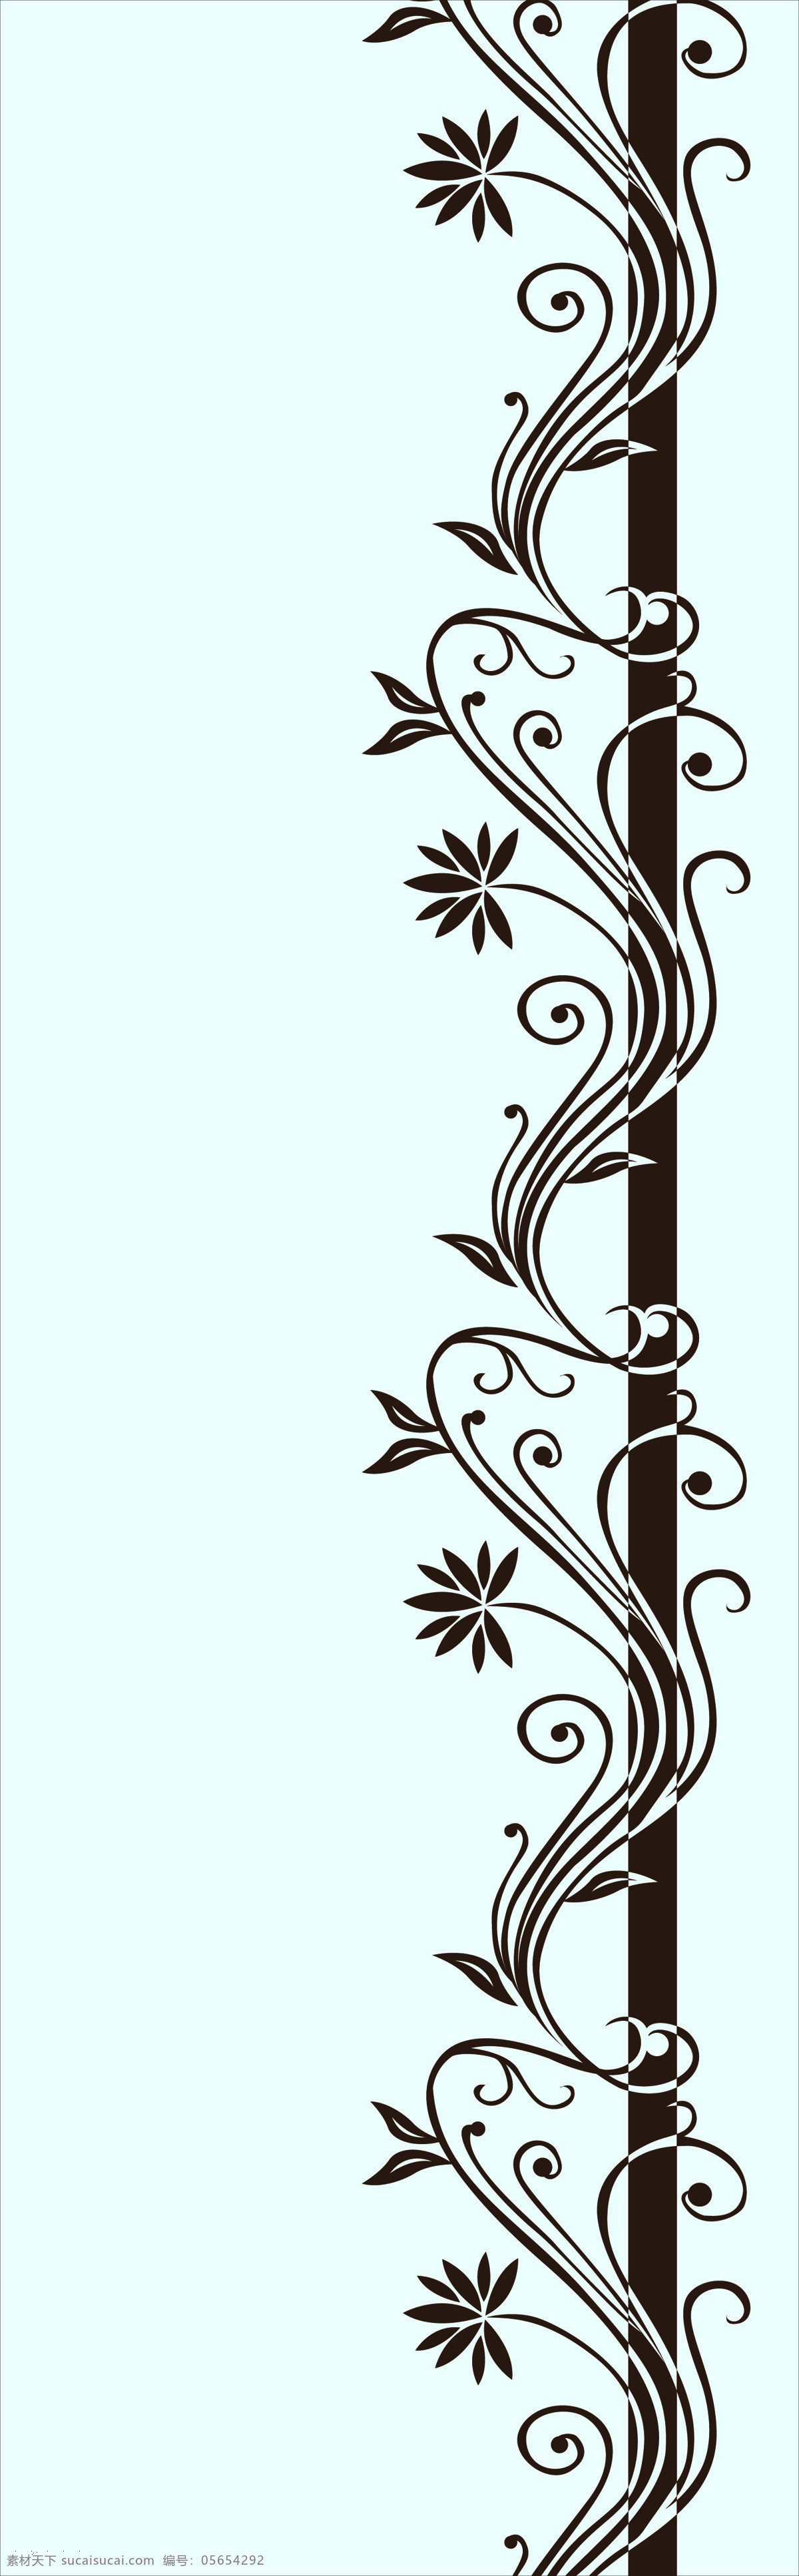 攀枝花 背景底纹 底纹边框 花朵 花纹 蓝底 欧式 移门图案 位图移门 装饰素材